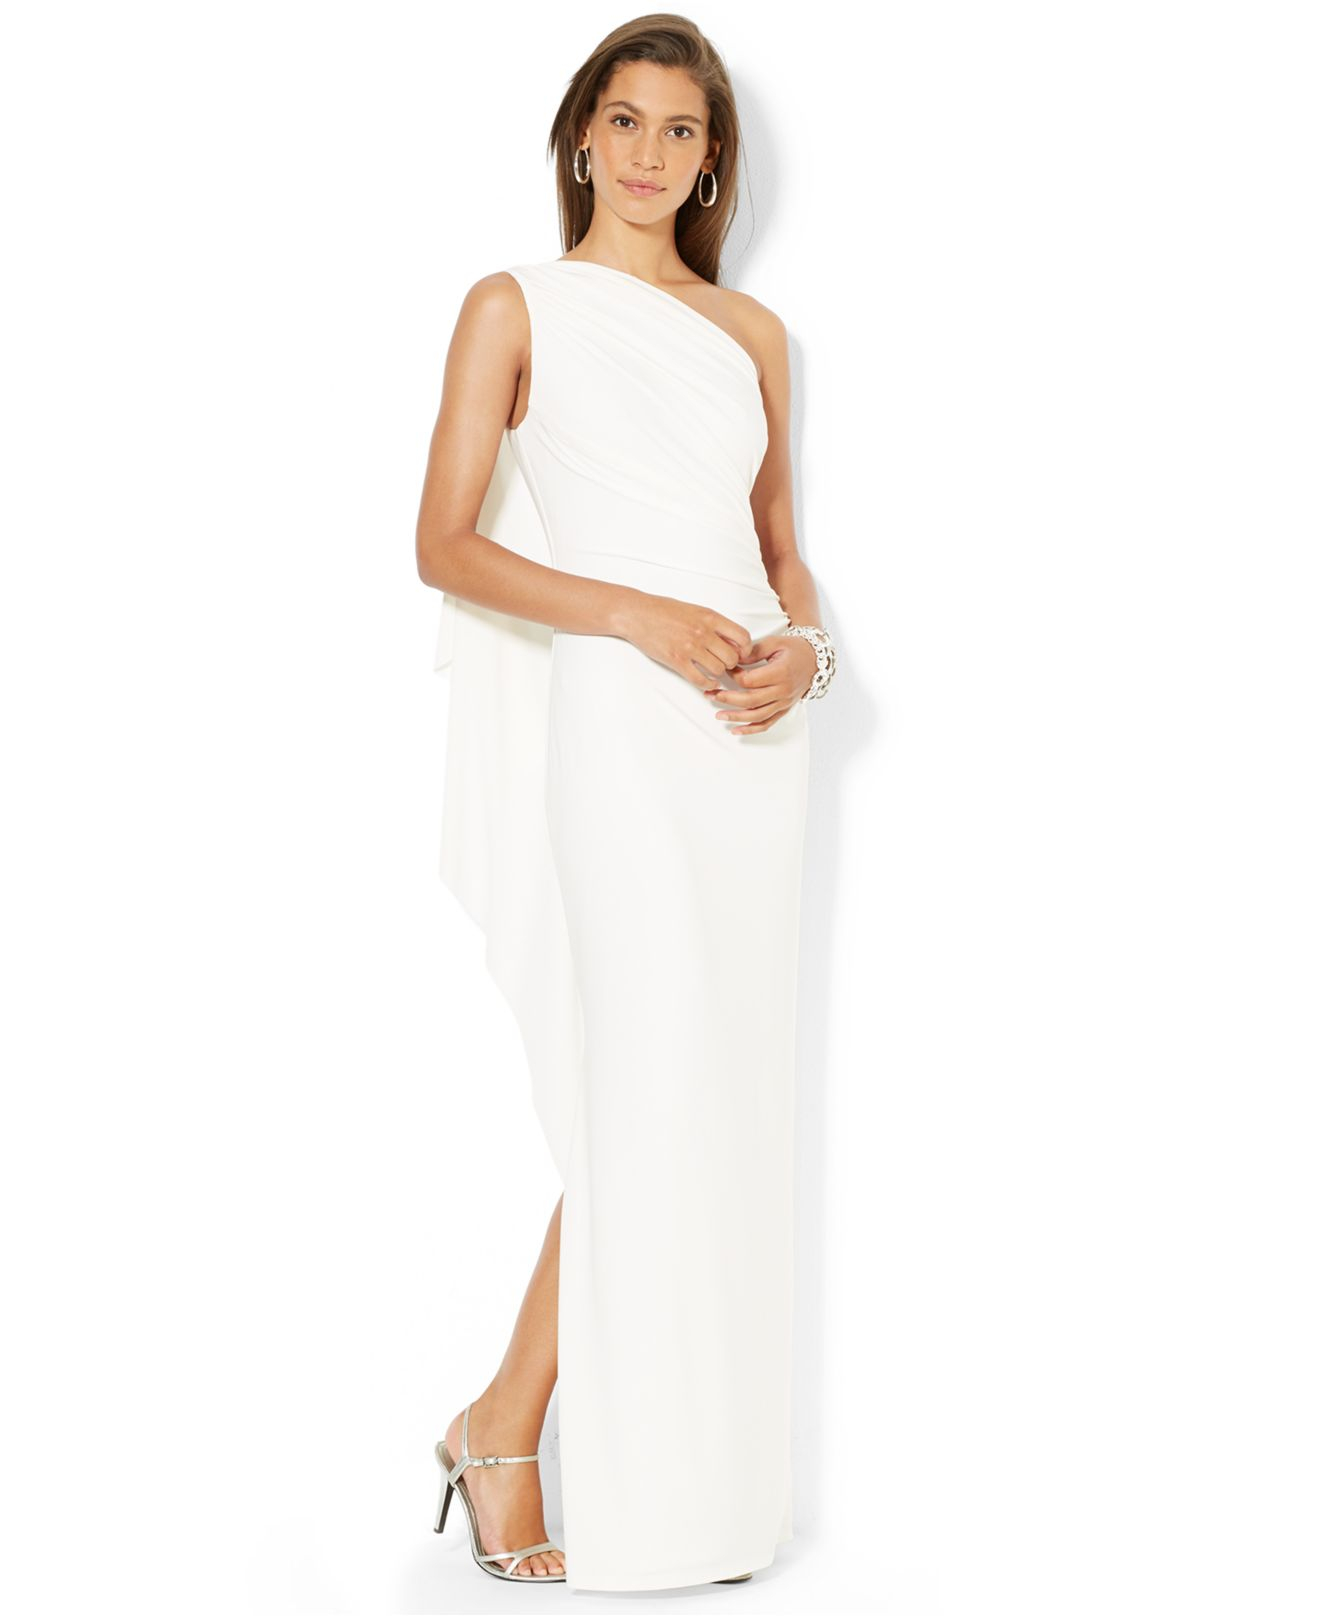 Lyst - Lauren By Ralph Lauren One-Shoulder Ruched Gown in White